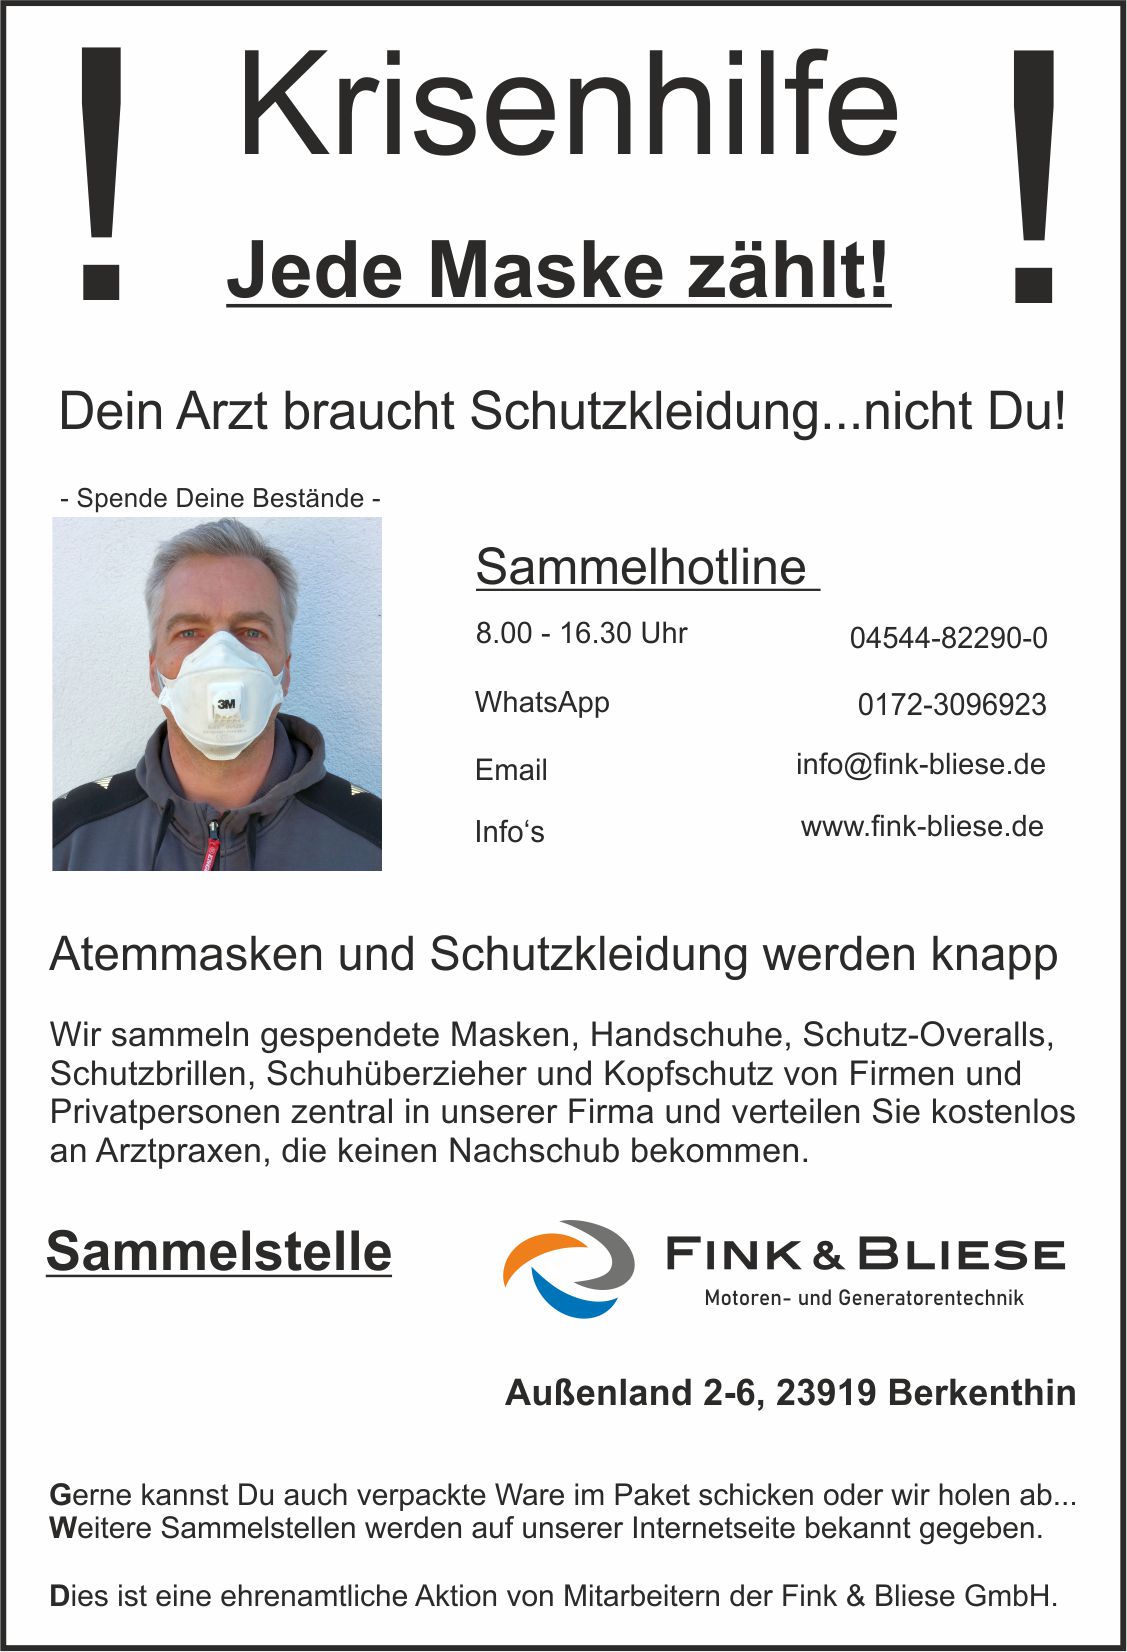 Firma Fink & Bliese Aus Berkenthin Startet Hilfsaktion „Jede Maske Zählt“